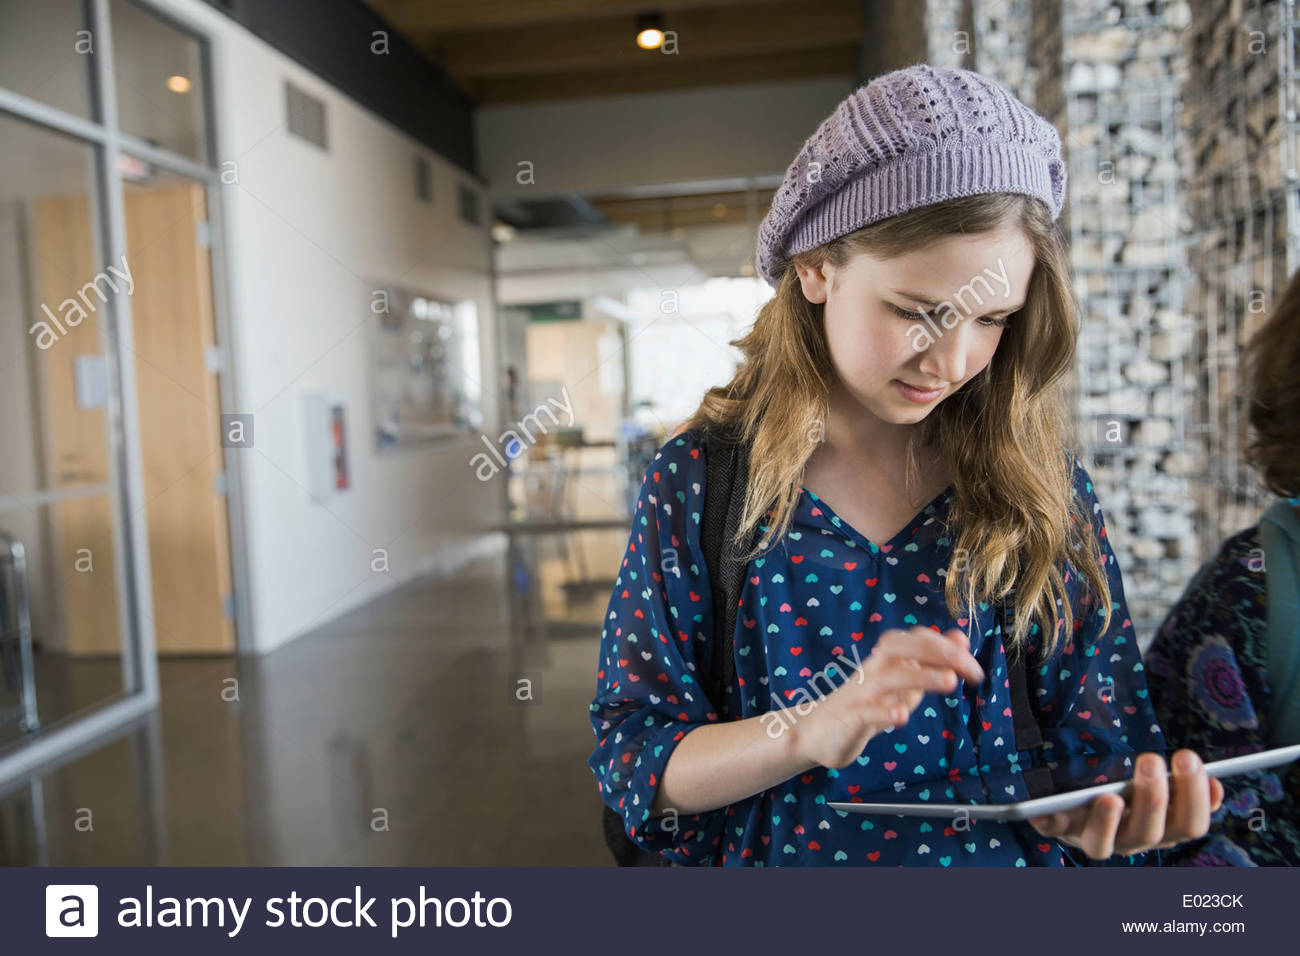 School girl using digital tablet in corridor Banque D'Images